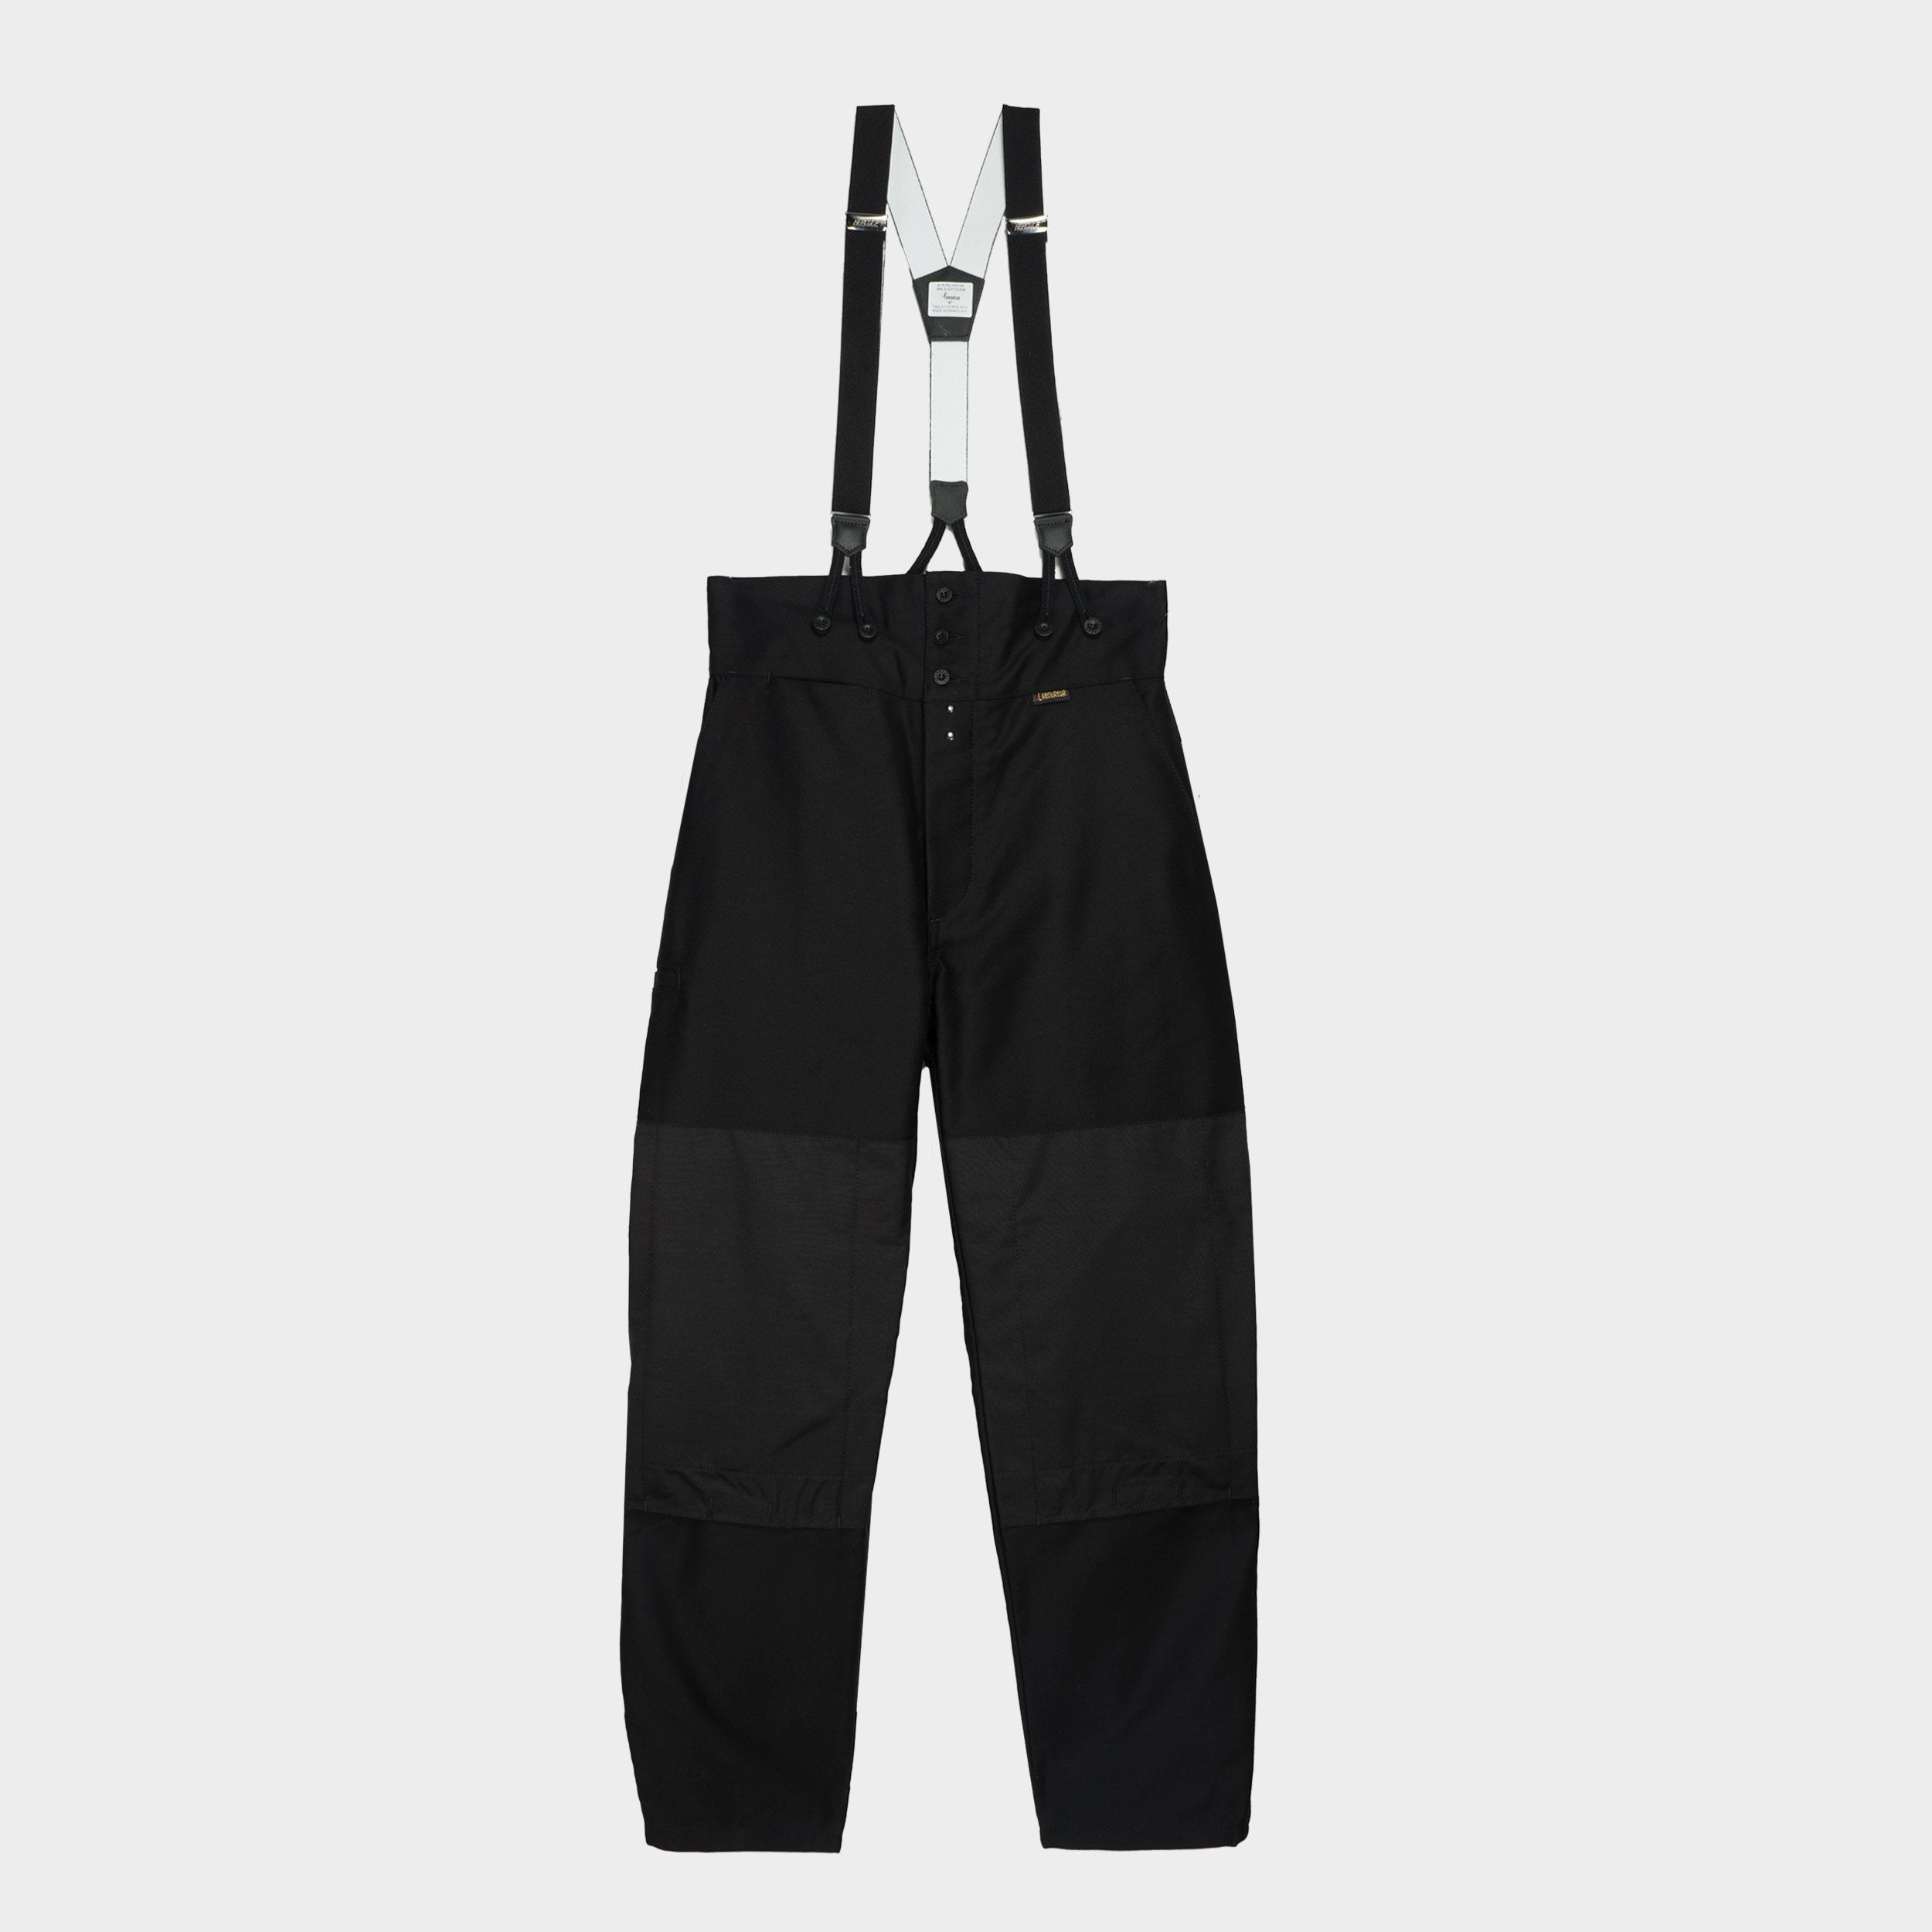 Buy FASHIONMYDAY Fashion Men's Suspenders Pants Adjustable Unisex  Adjustable Y Back Black | Suspenders| Braces at Amazon.in